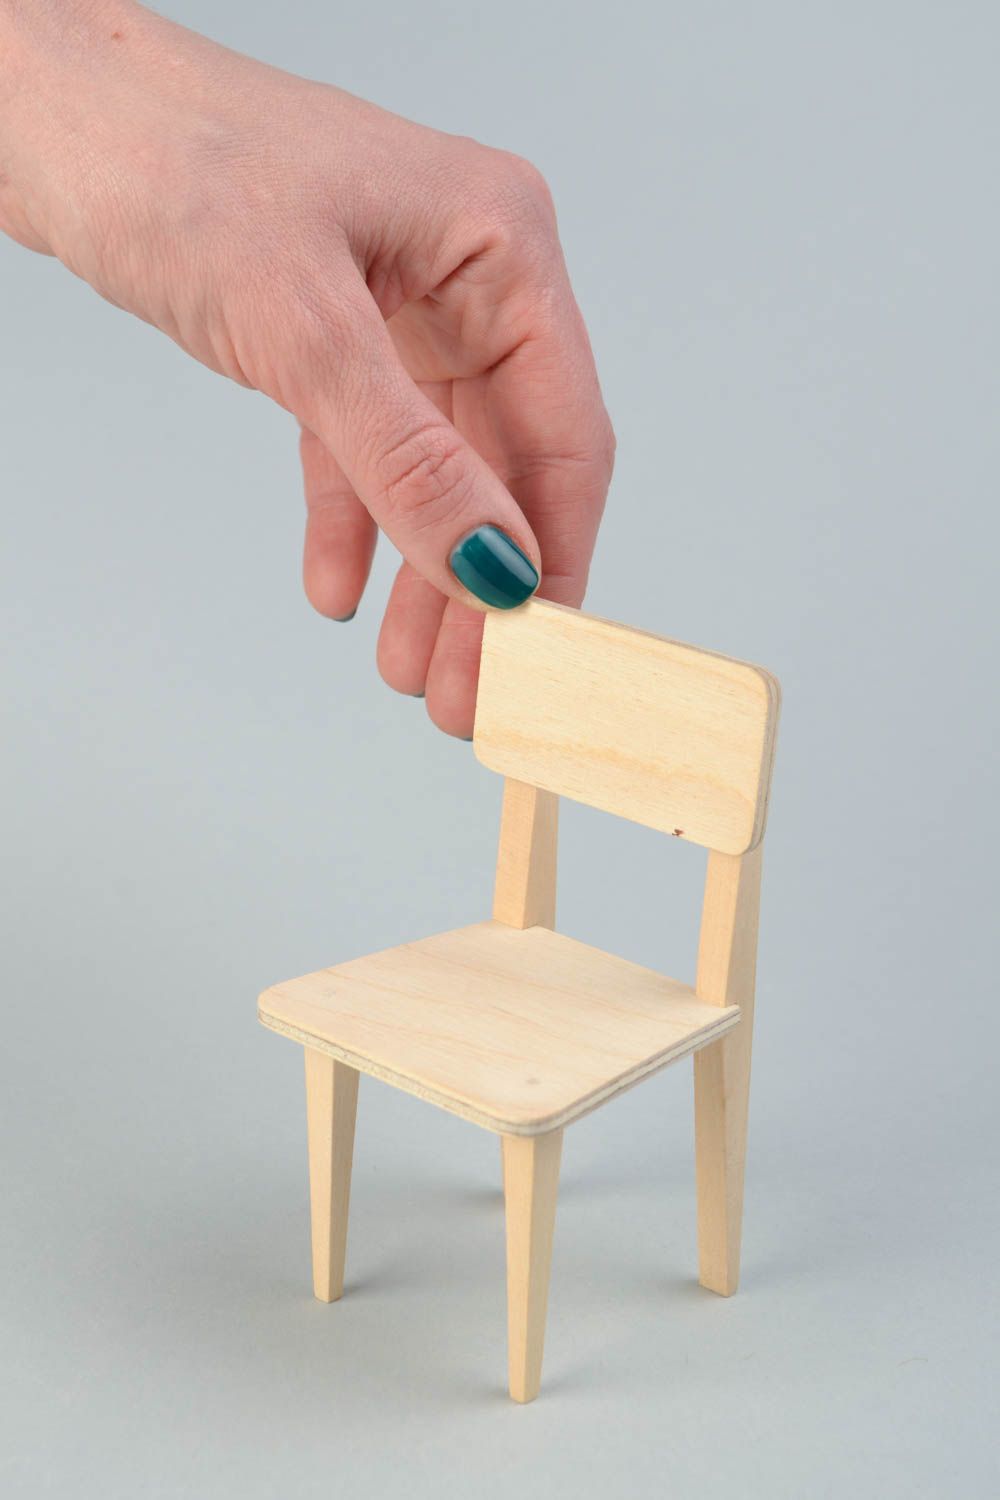 Деревянный стул для куклы заготовка для творчества под роспись хенд мэйд фото 2